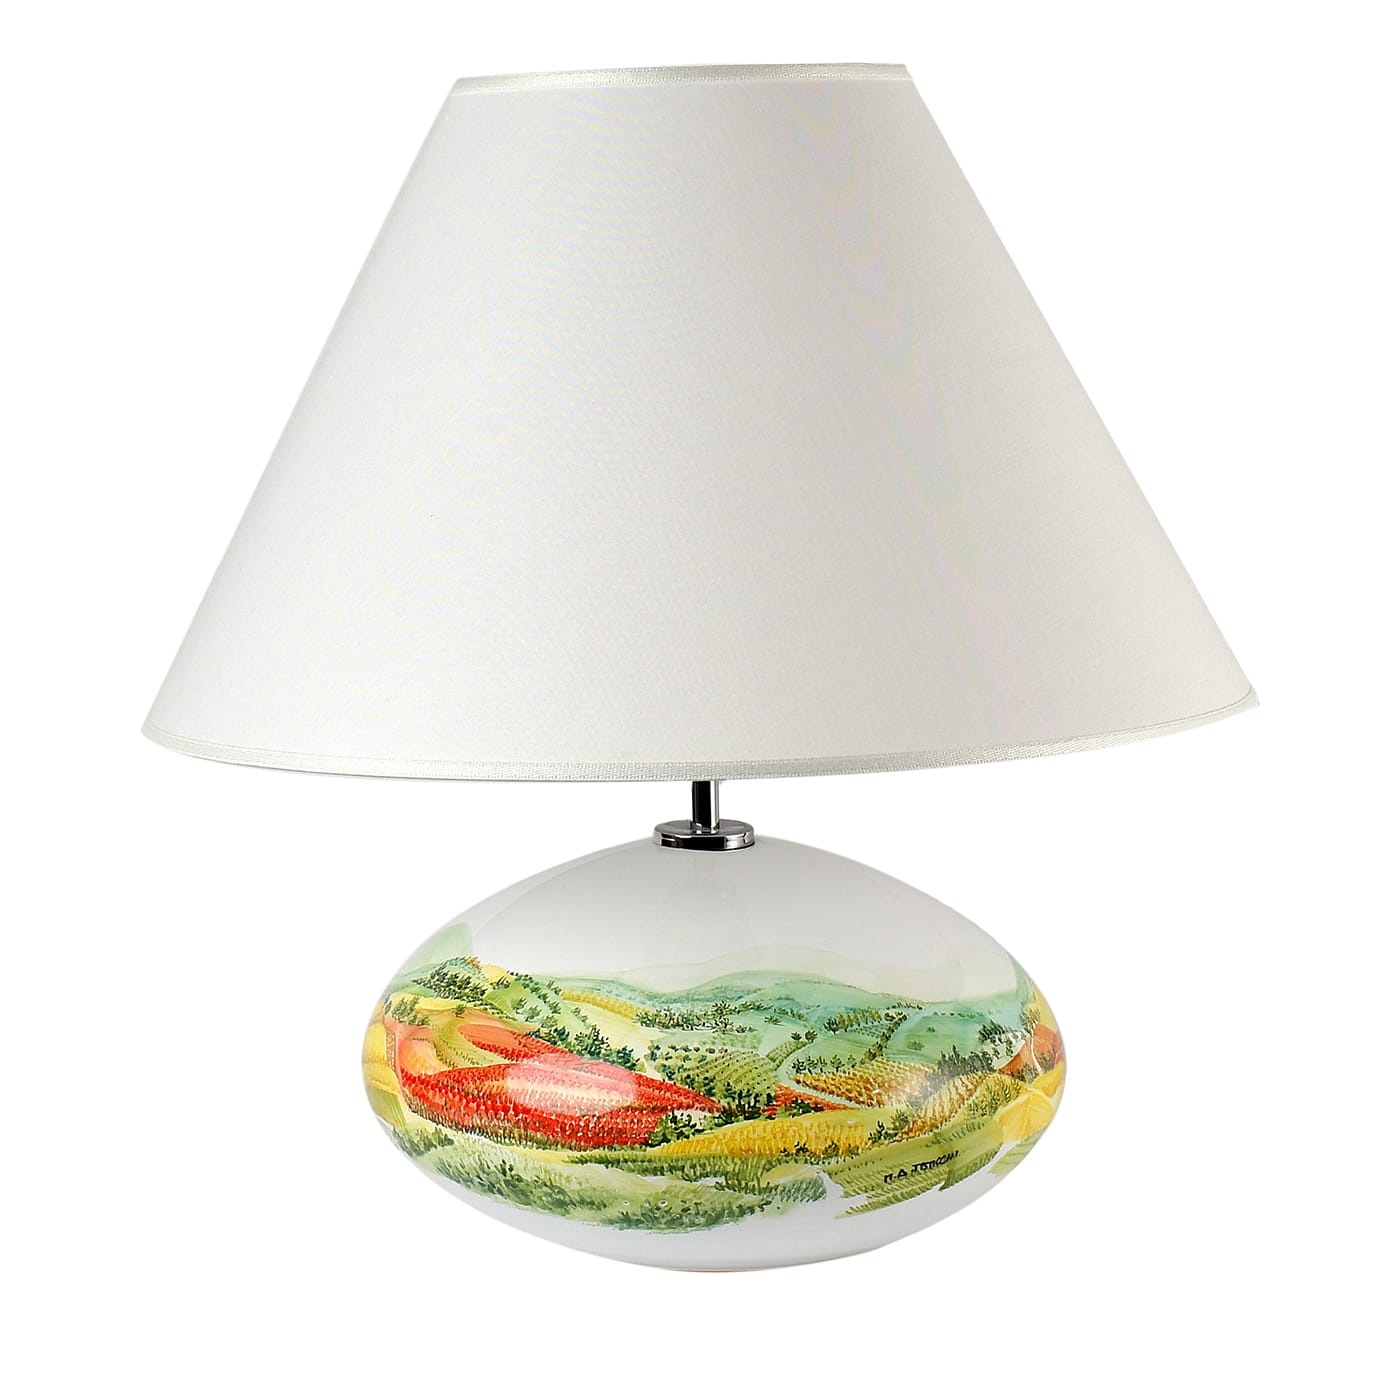 Paesaggio Table Lamp by Maria Antonietta Taticchi - Materia Ceramica